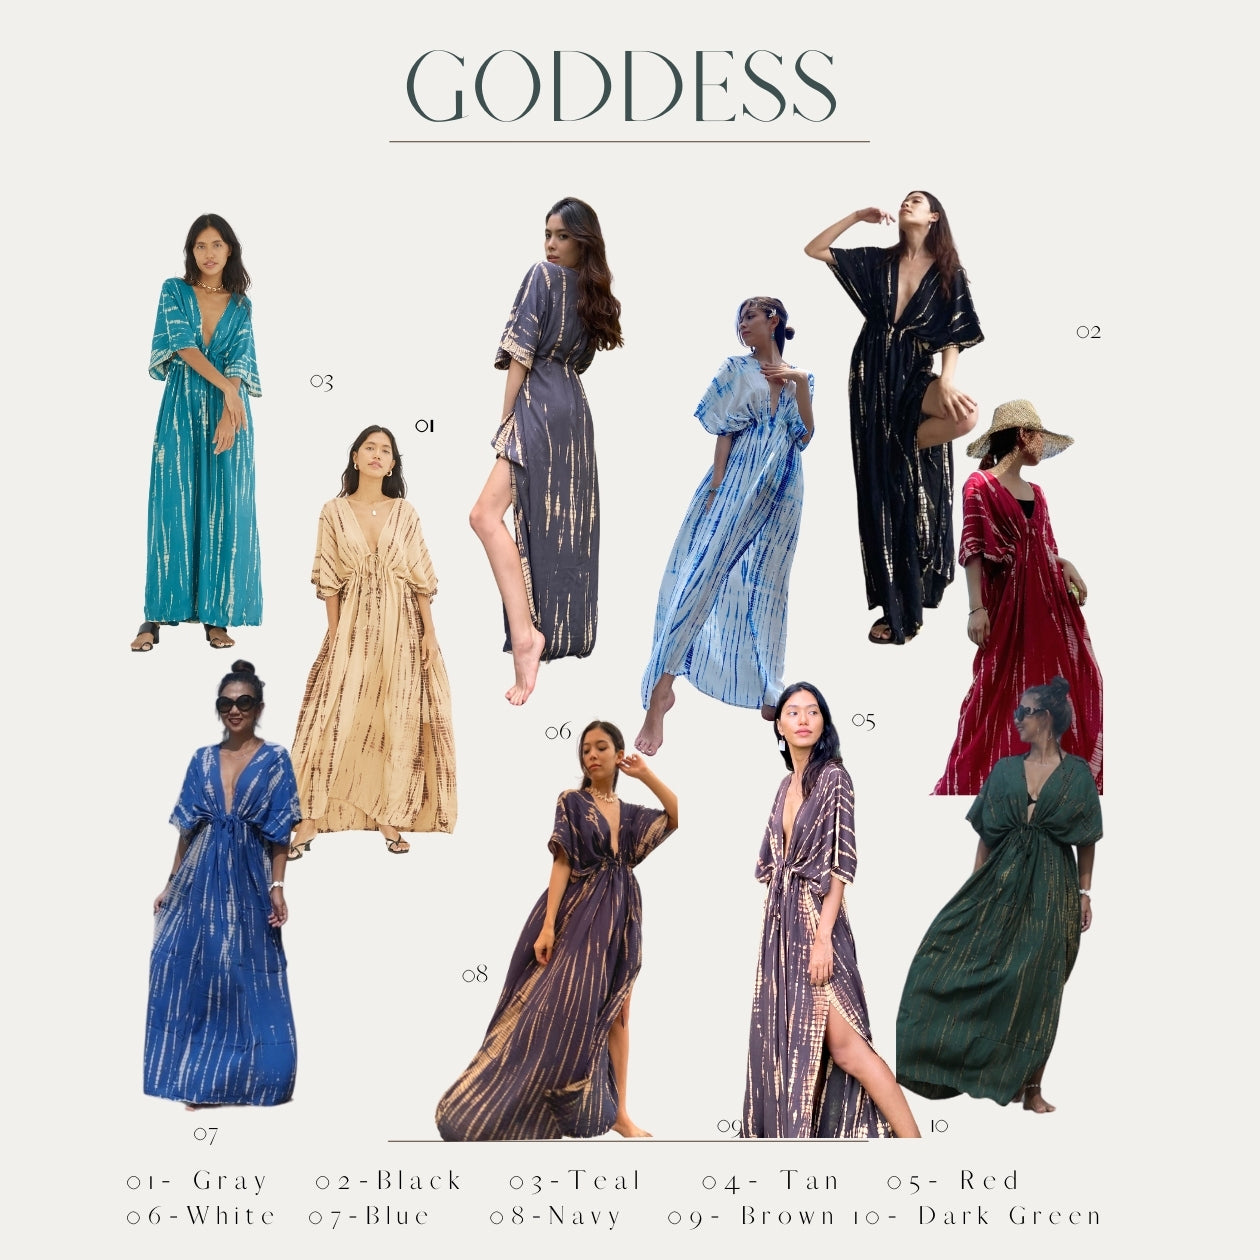 Goddess maxi dress, tie dye maxi dress, dress for summer, dress for vacation?